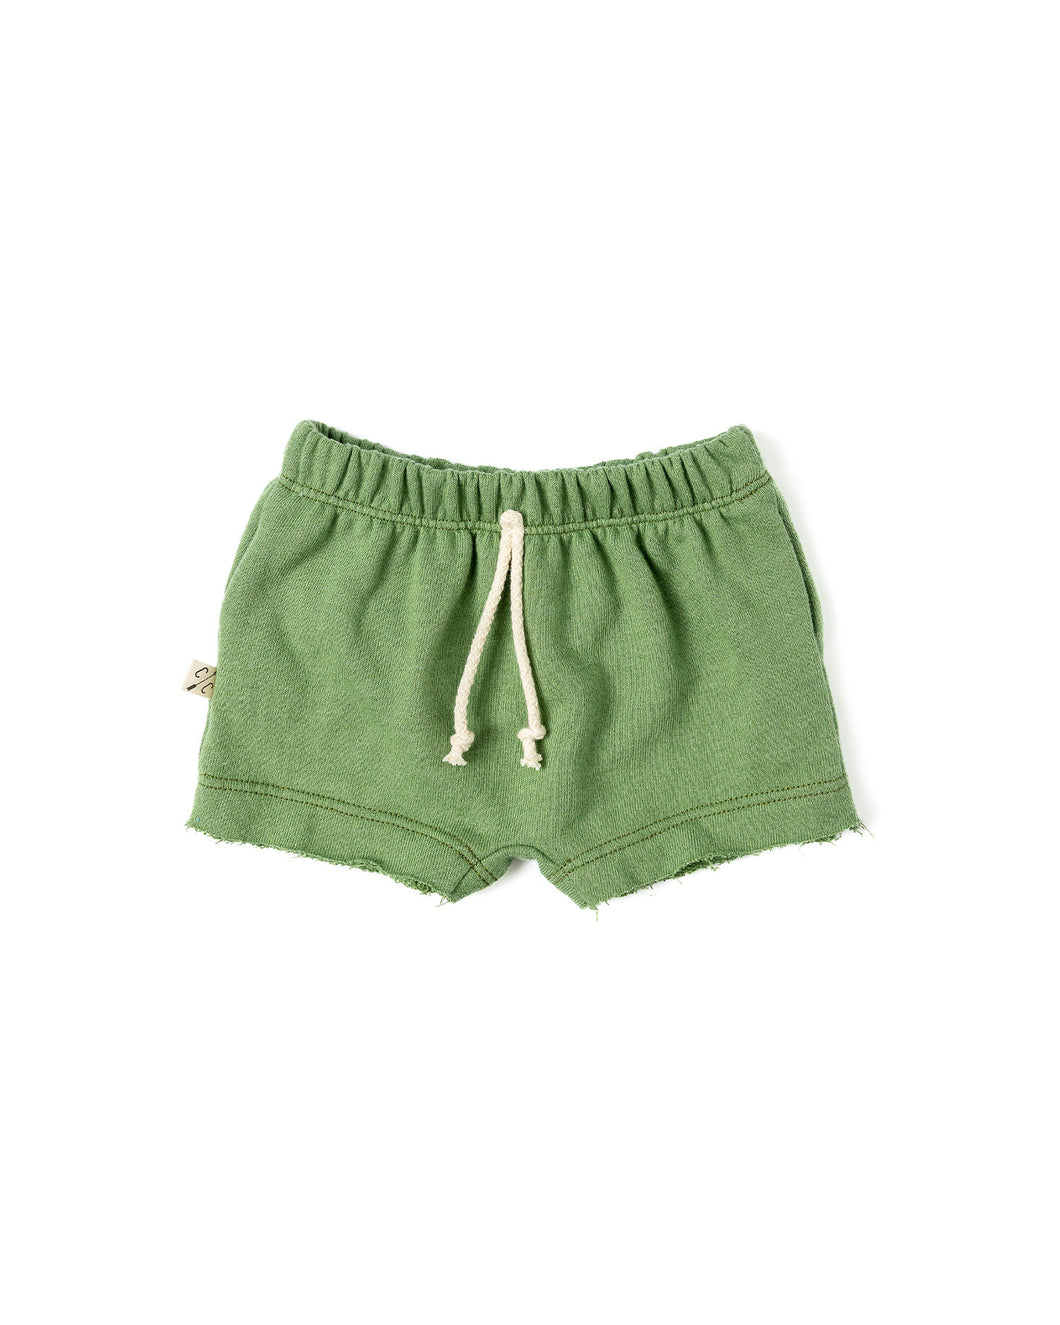 boy shorts - camp green